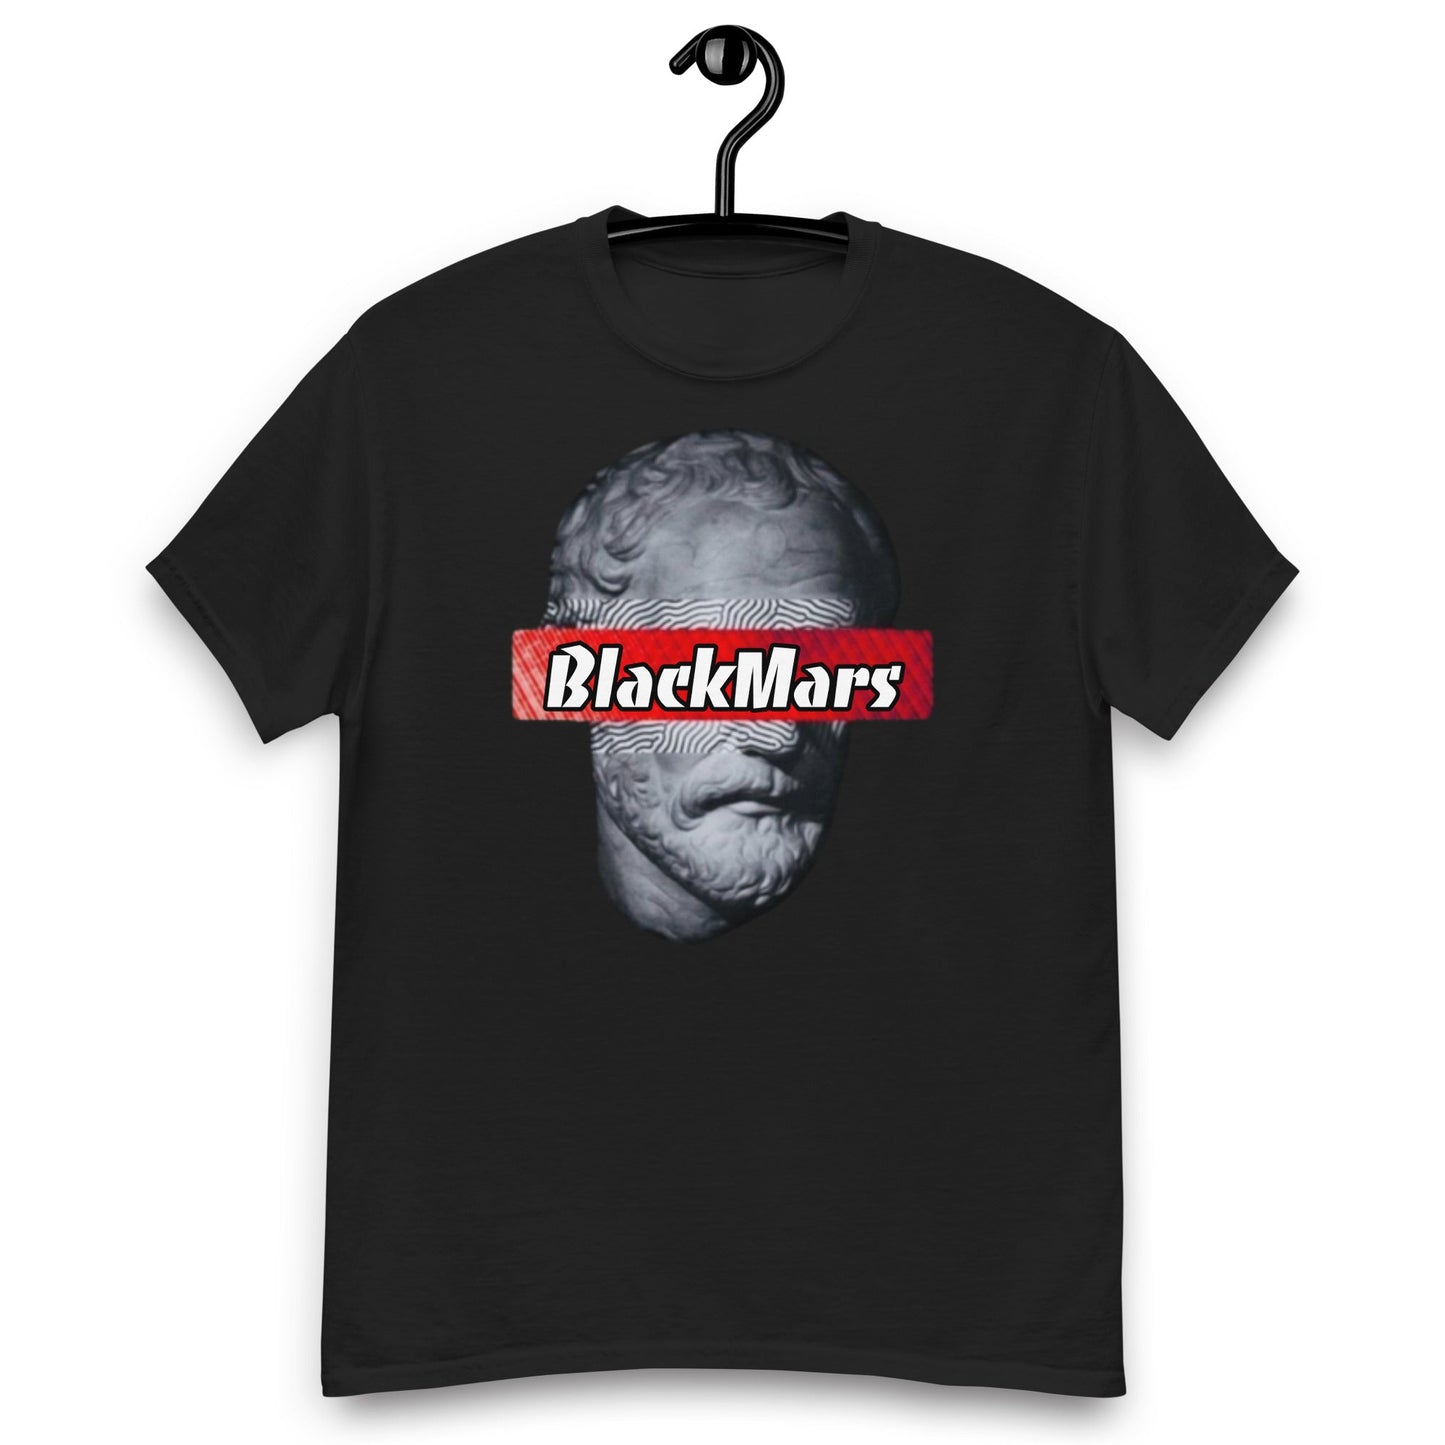 BlackMars Men's classic tee - Premium  from BlackMars  - Just £17! Shop now at BlackMars 17BlackMars 